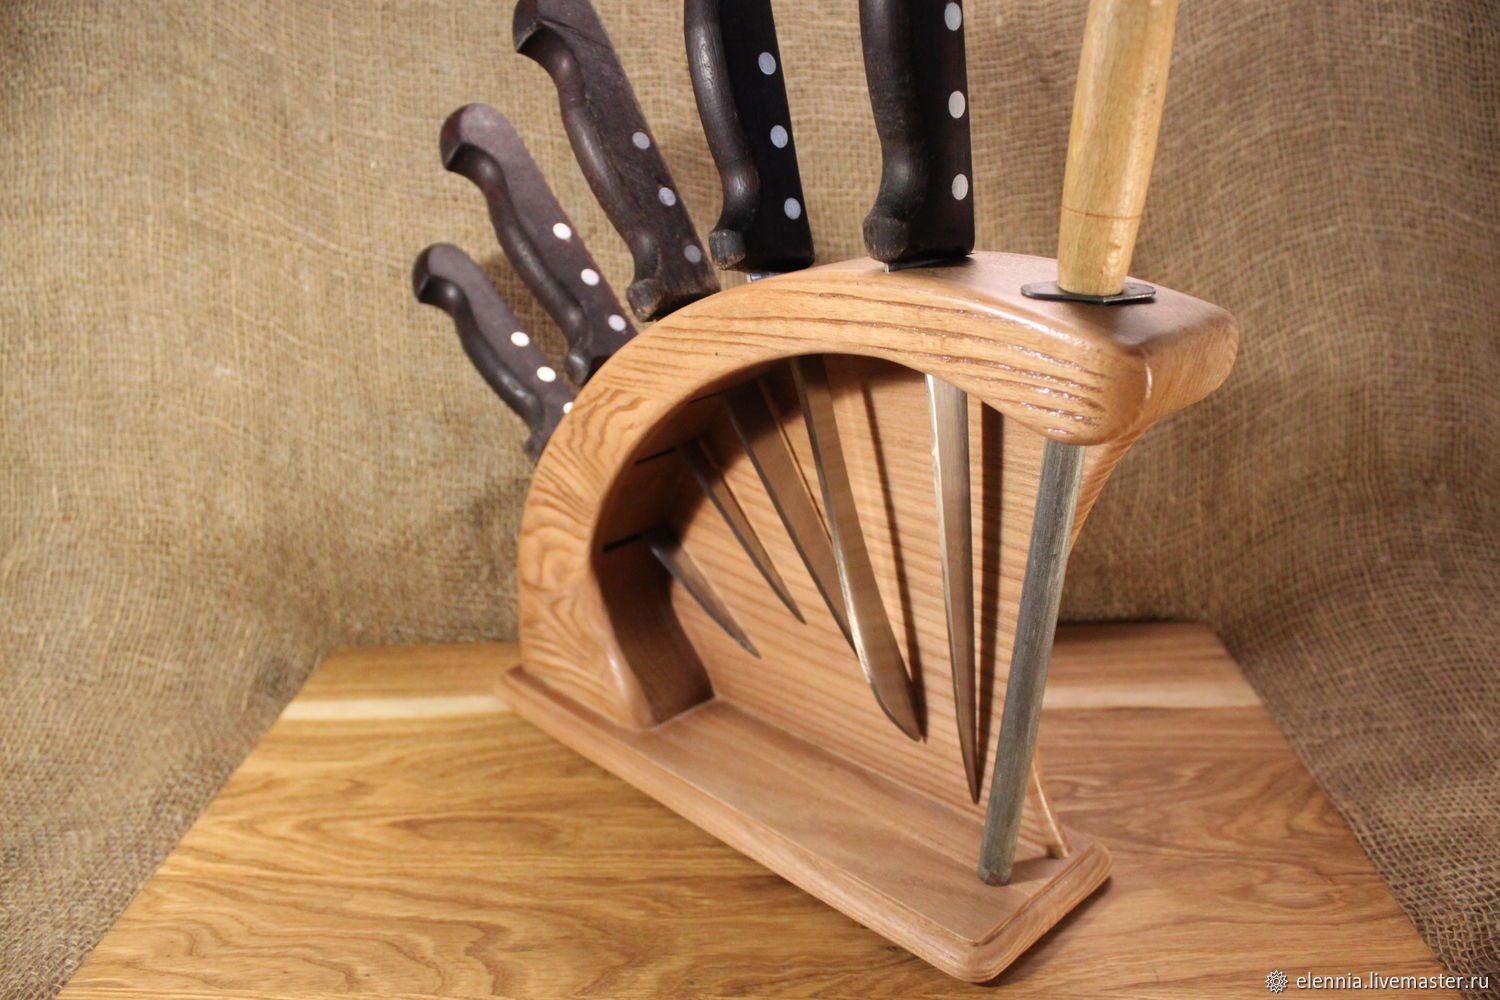 Самодельные изделия. Подставка для ножей Zollinger. Подставка для ножей из дерева. Необычные деревянные изделия. Оригинальные изделия из дерева для кухни.